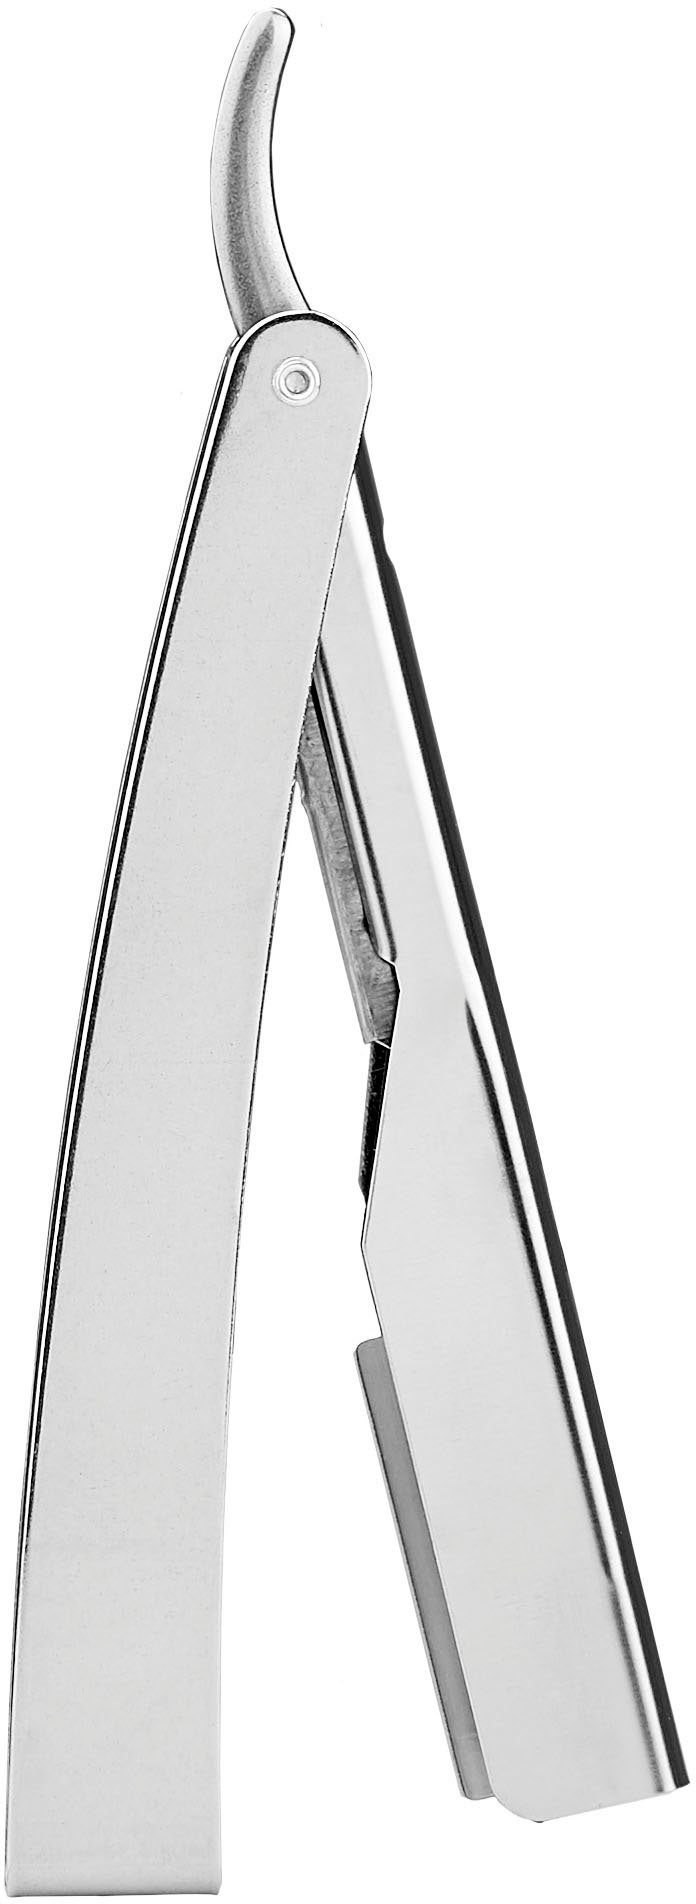 FRIPAC Rasiermesser Klappgriff mit praktischem Rasiermesser 1955 silberfarben,